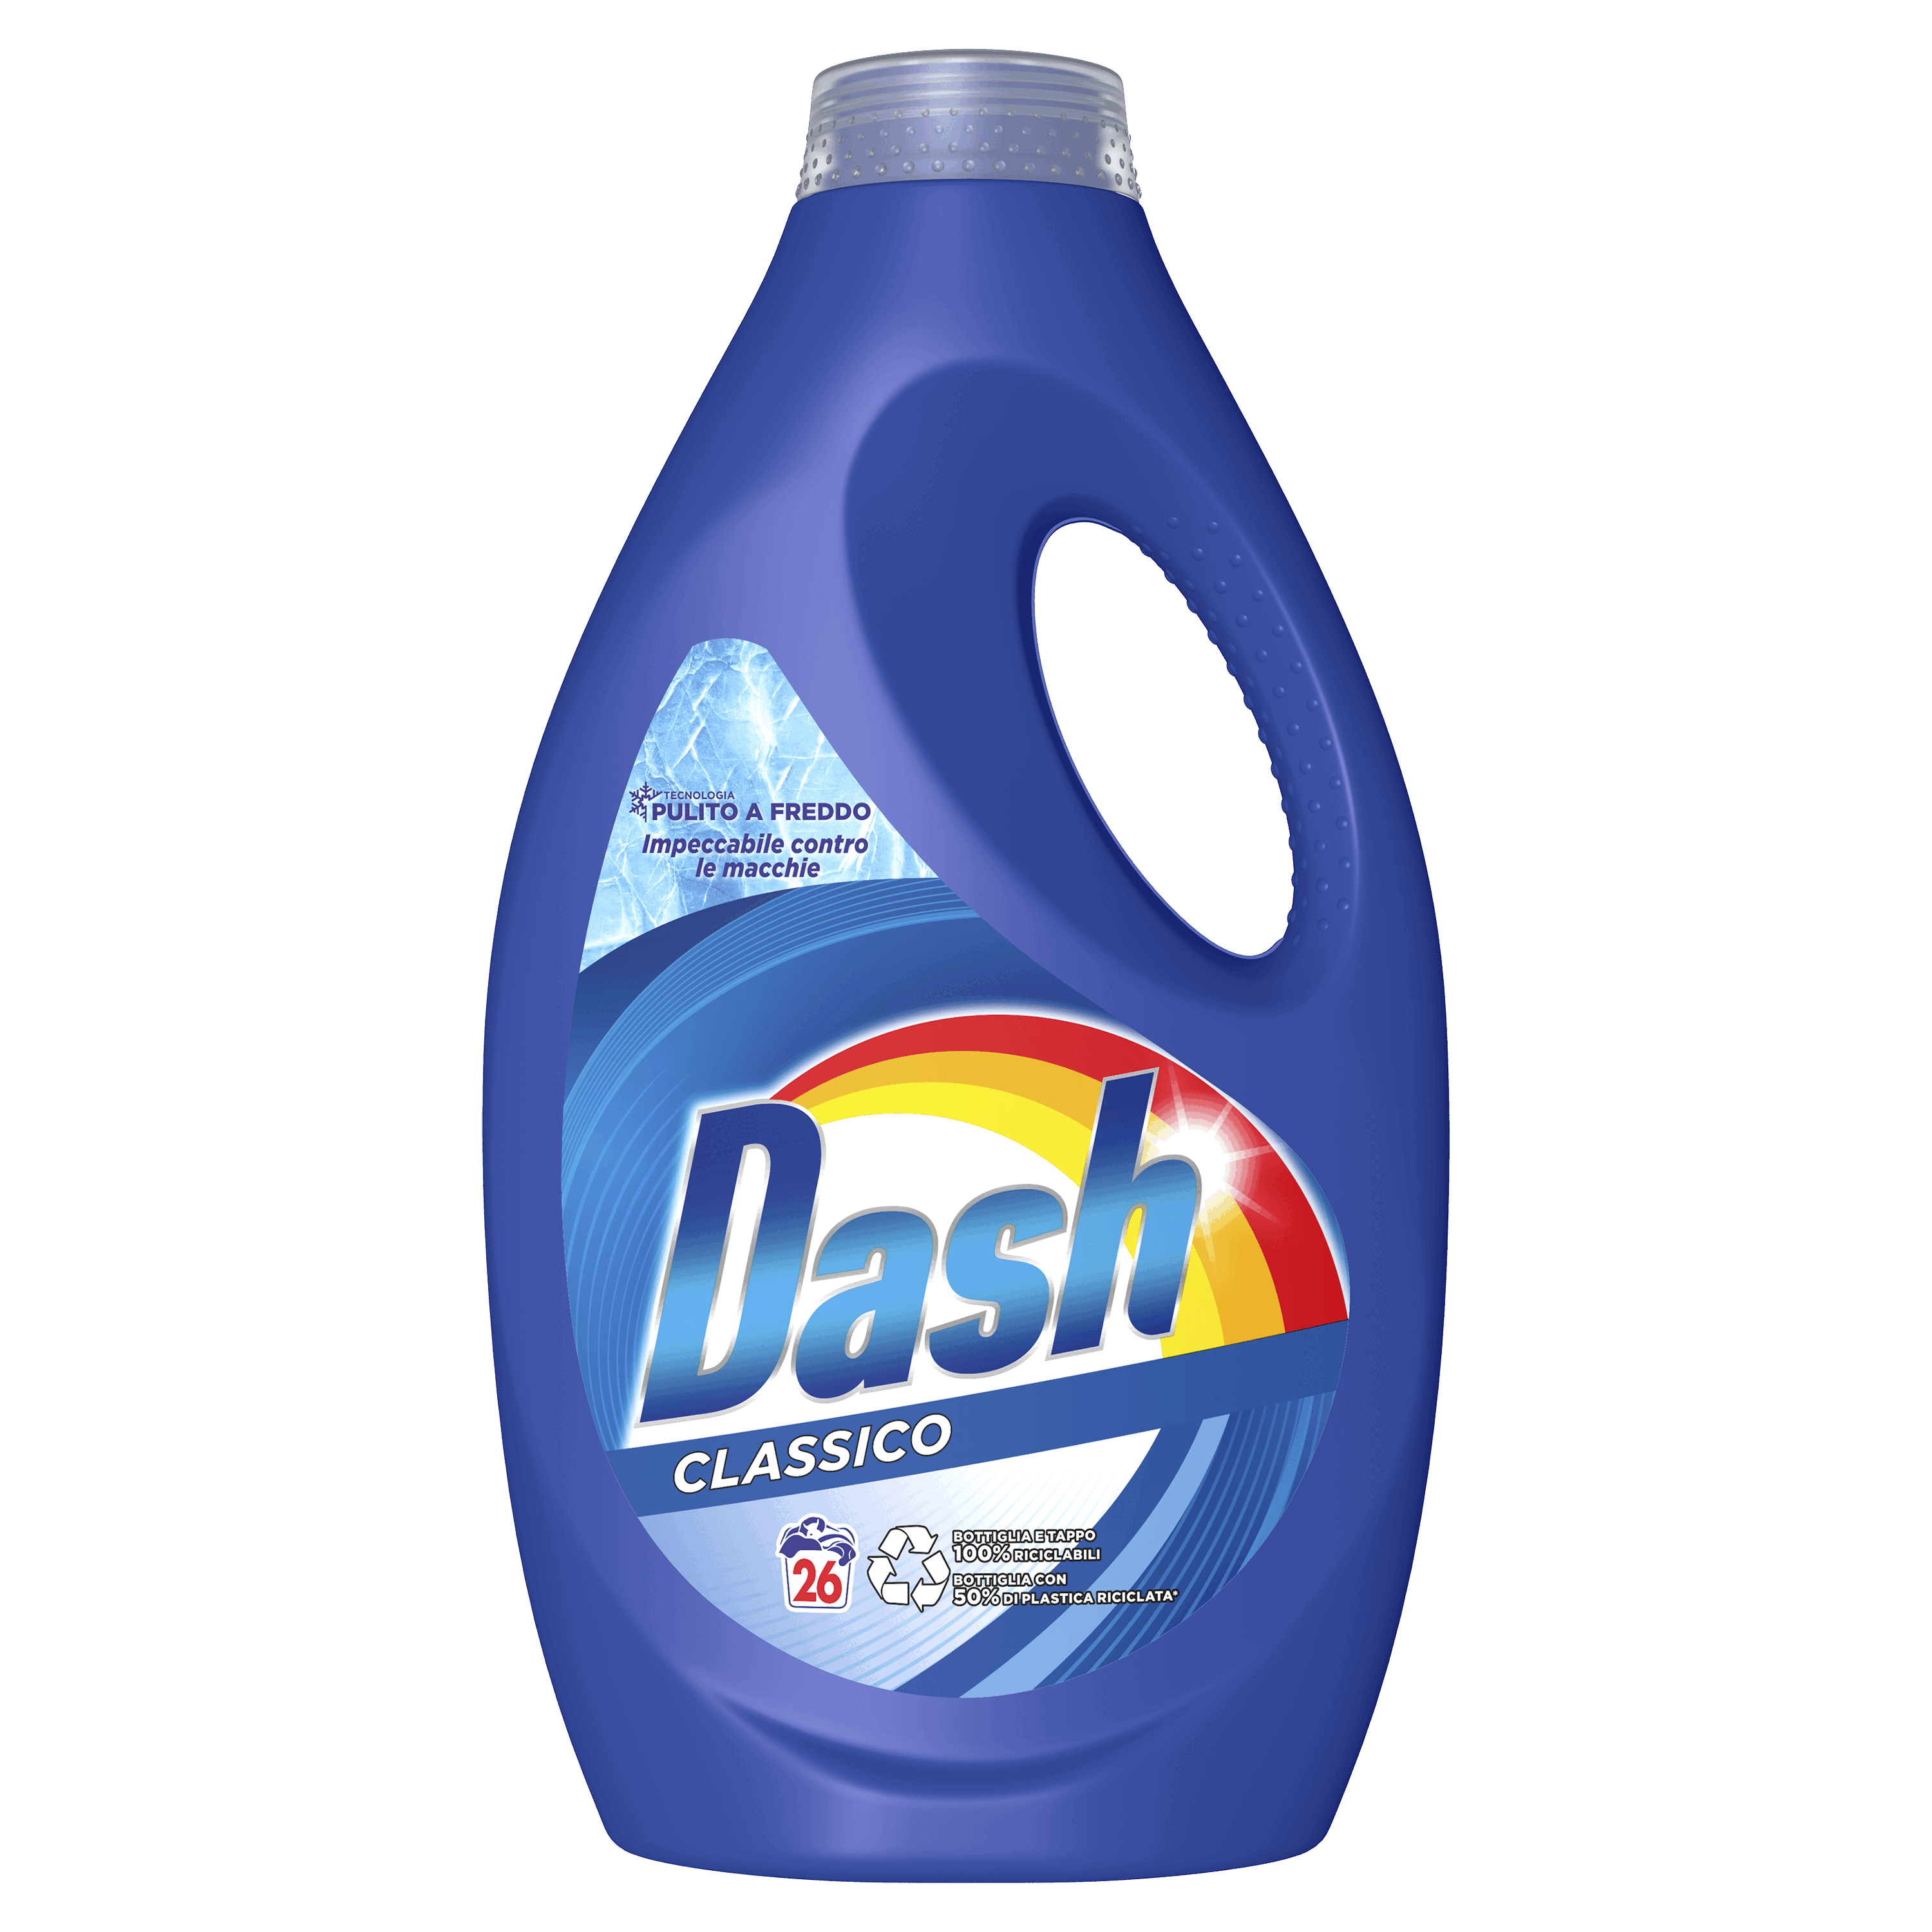 Detergent Dash